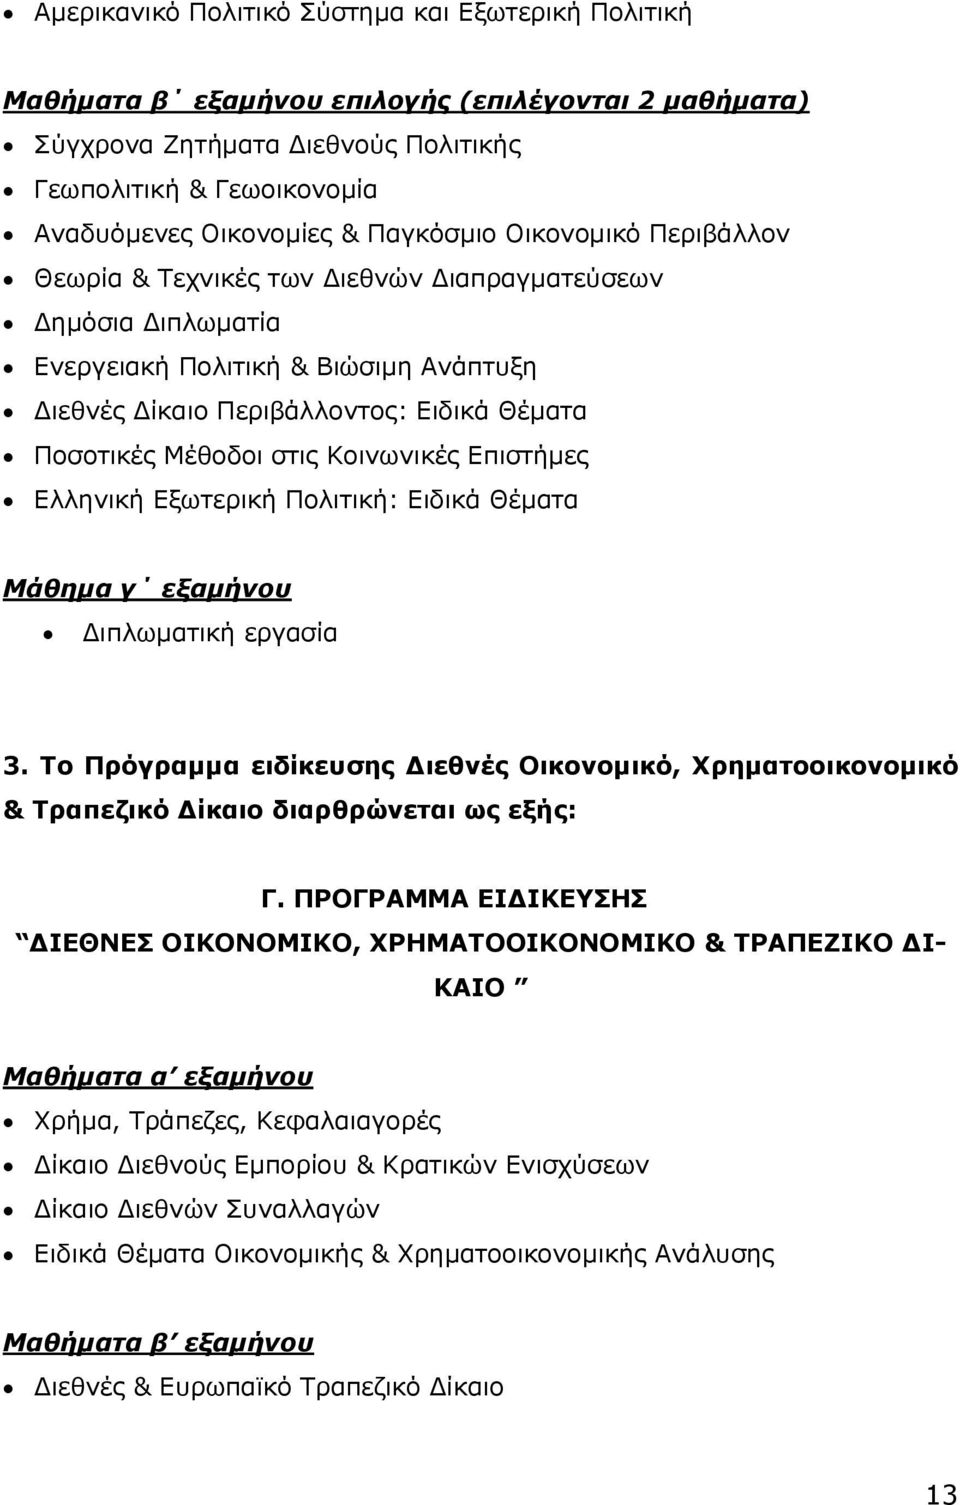 στις Κοινωνικές Επιστήμες Ελληνική Εξωτερική Πολιτική: Ειδικά Θέματα Μάθημα γ εξαμήνου Διπλωματική εργασία 3.